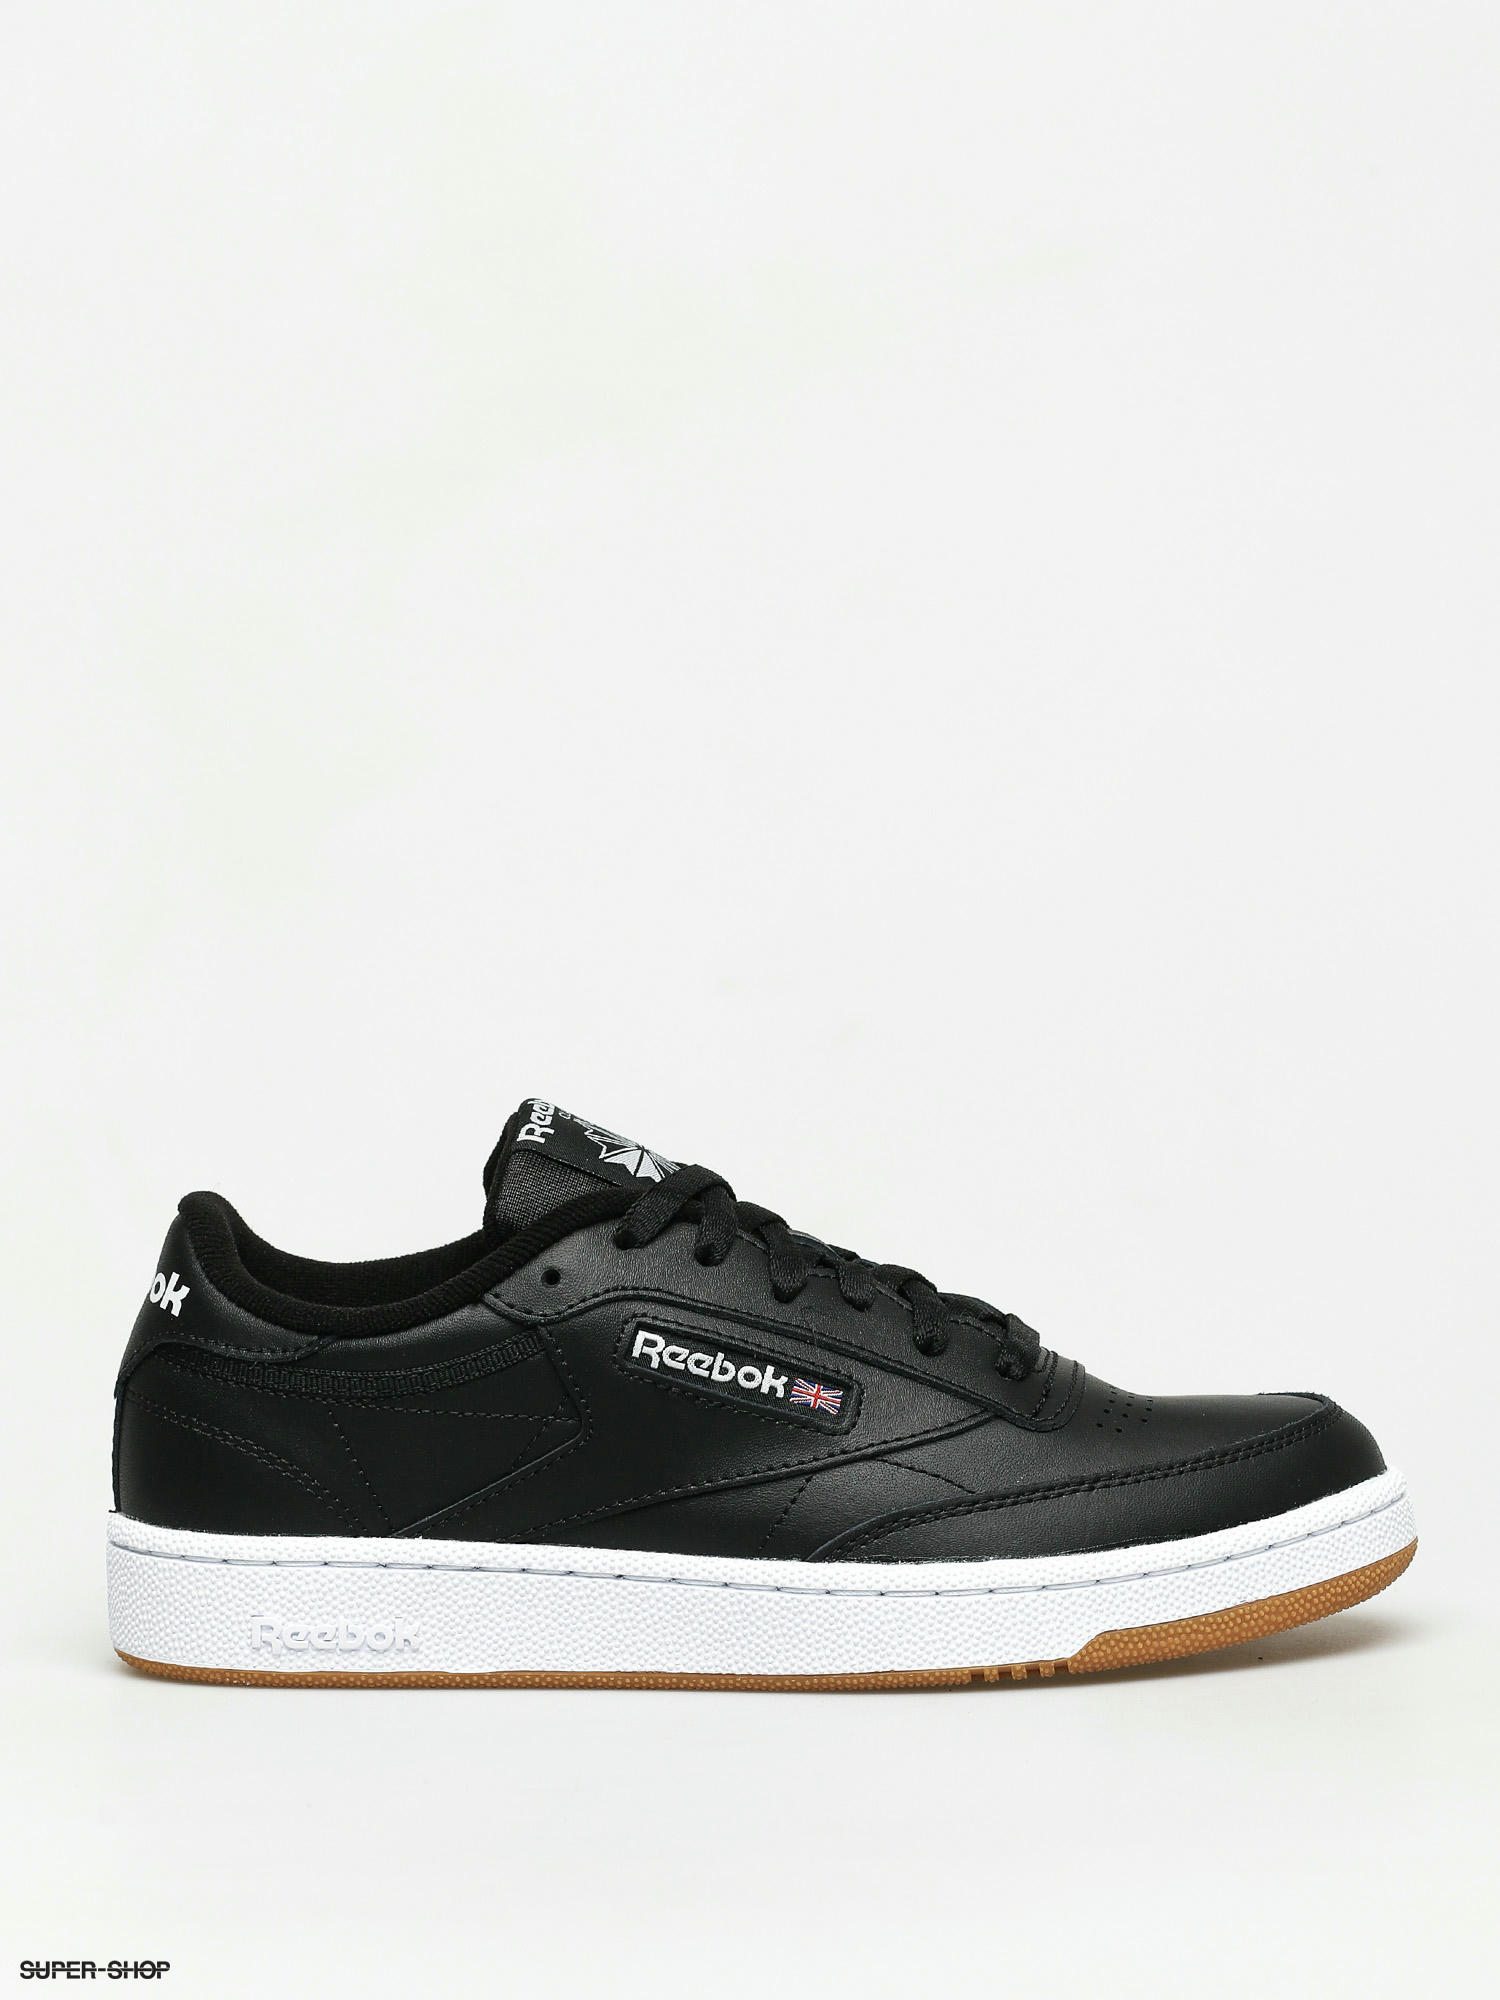 Reebok Club C 85 Shoes (black/white/gum)